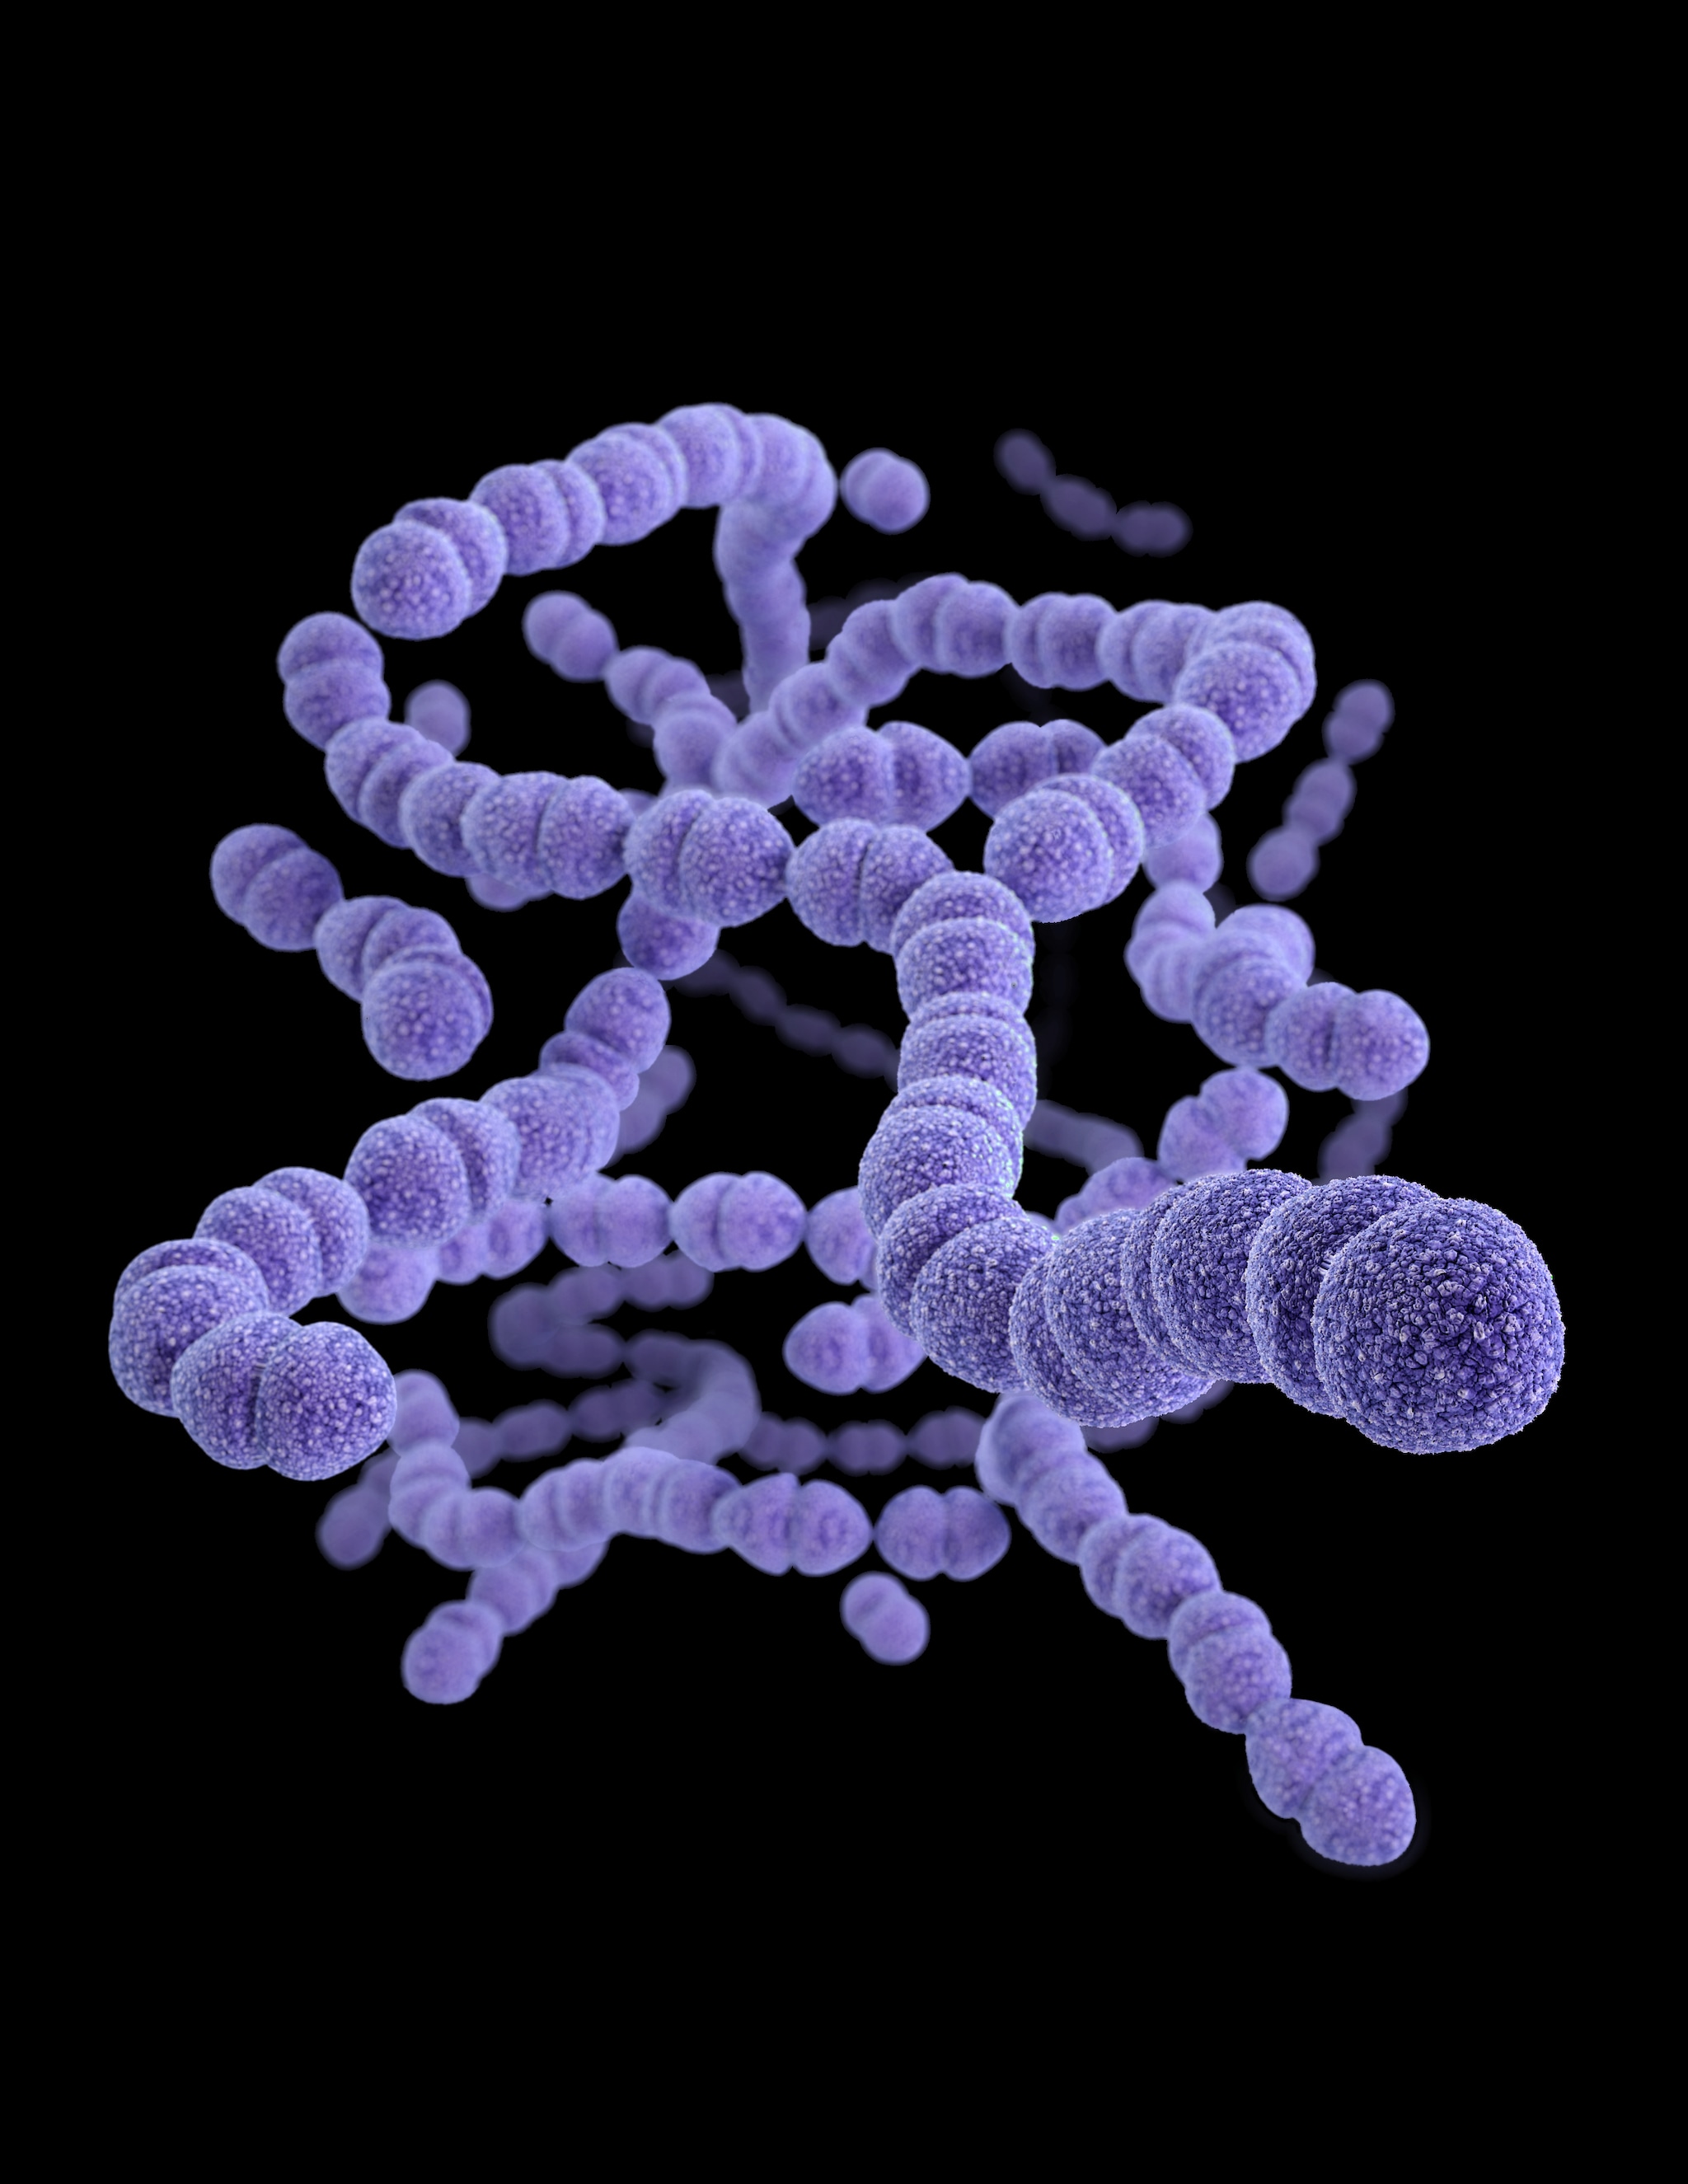 Medical illustration of drug-resistant Streptococcus pneumoniae